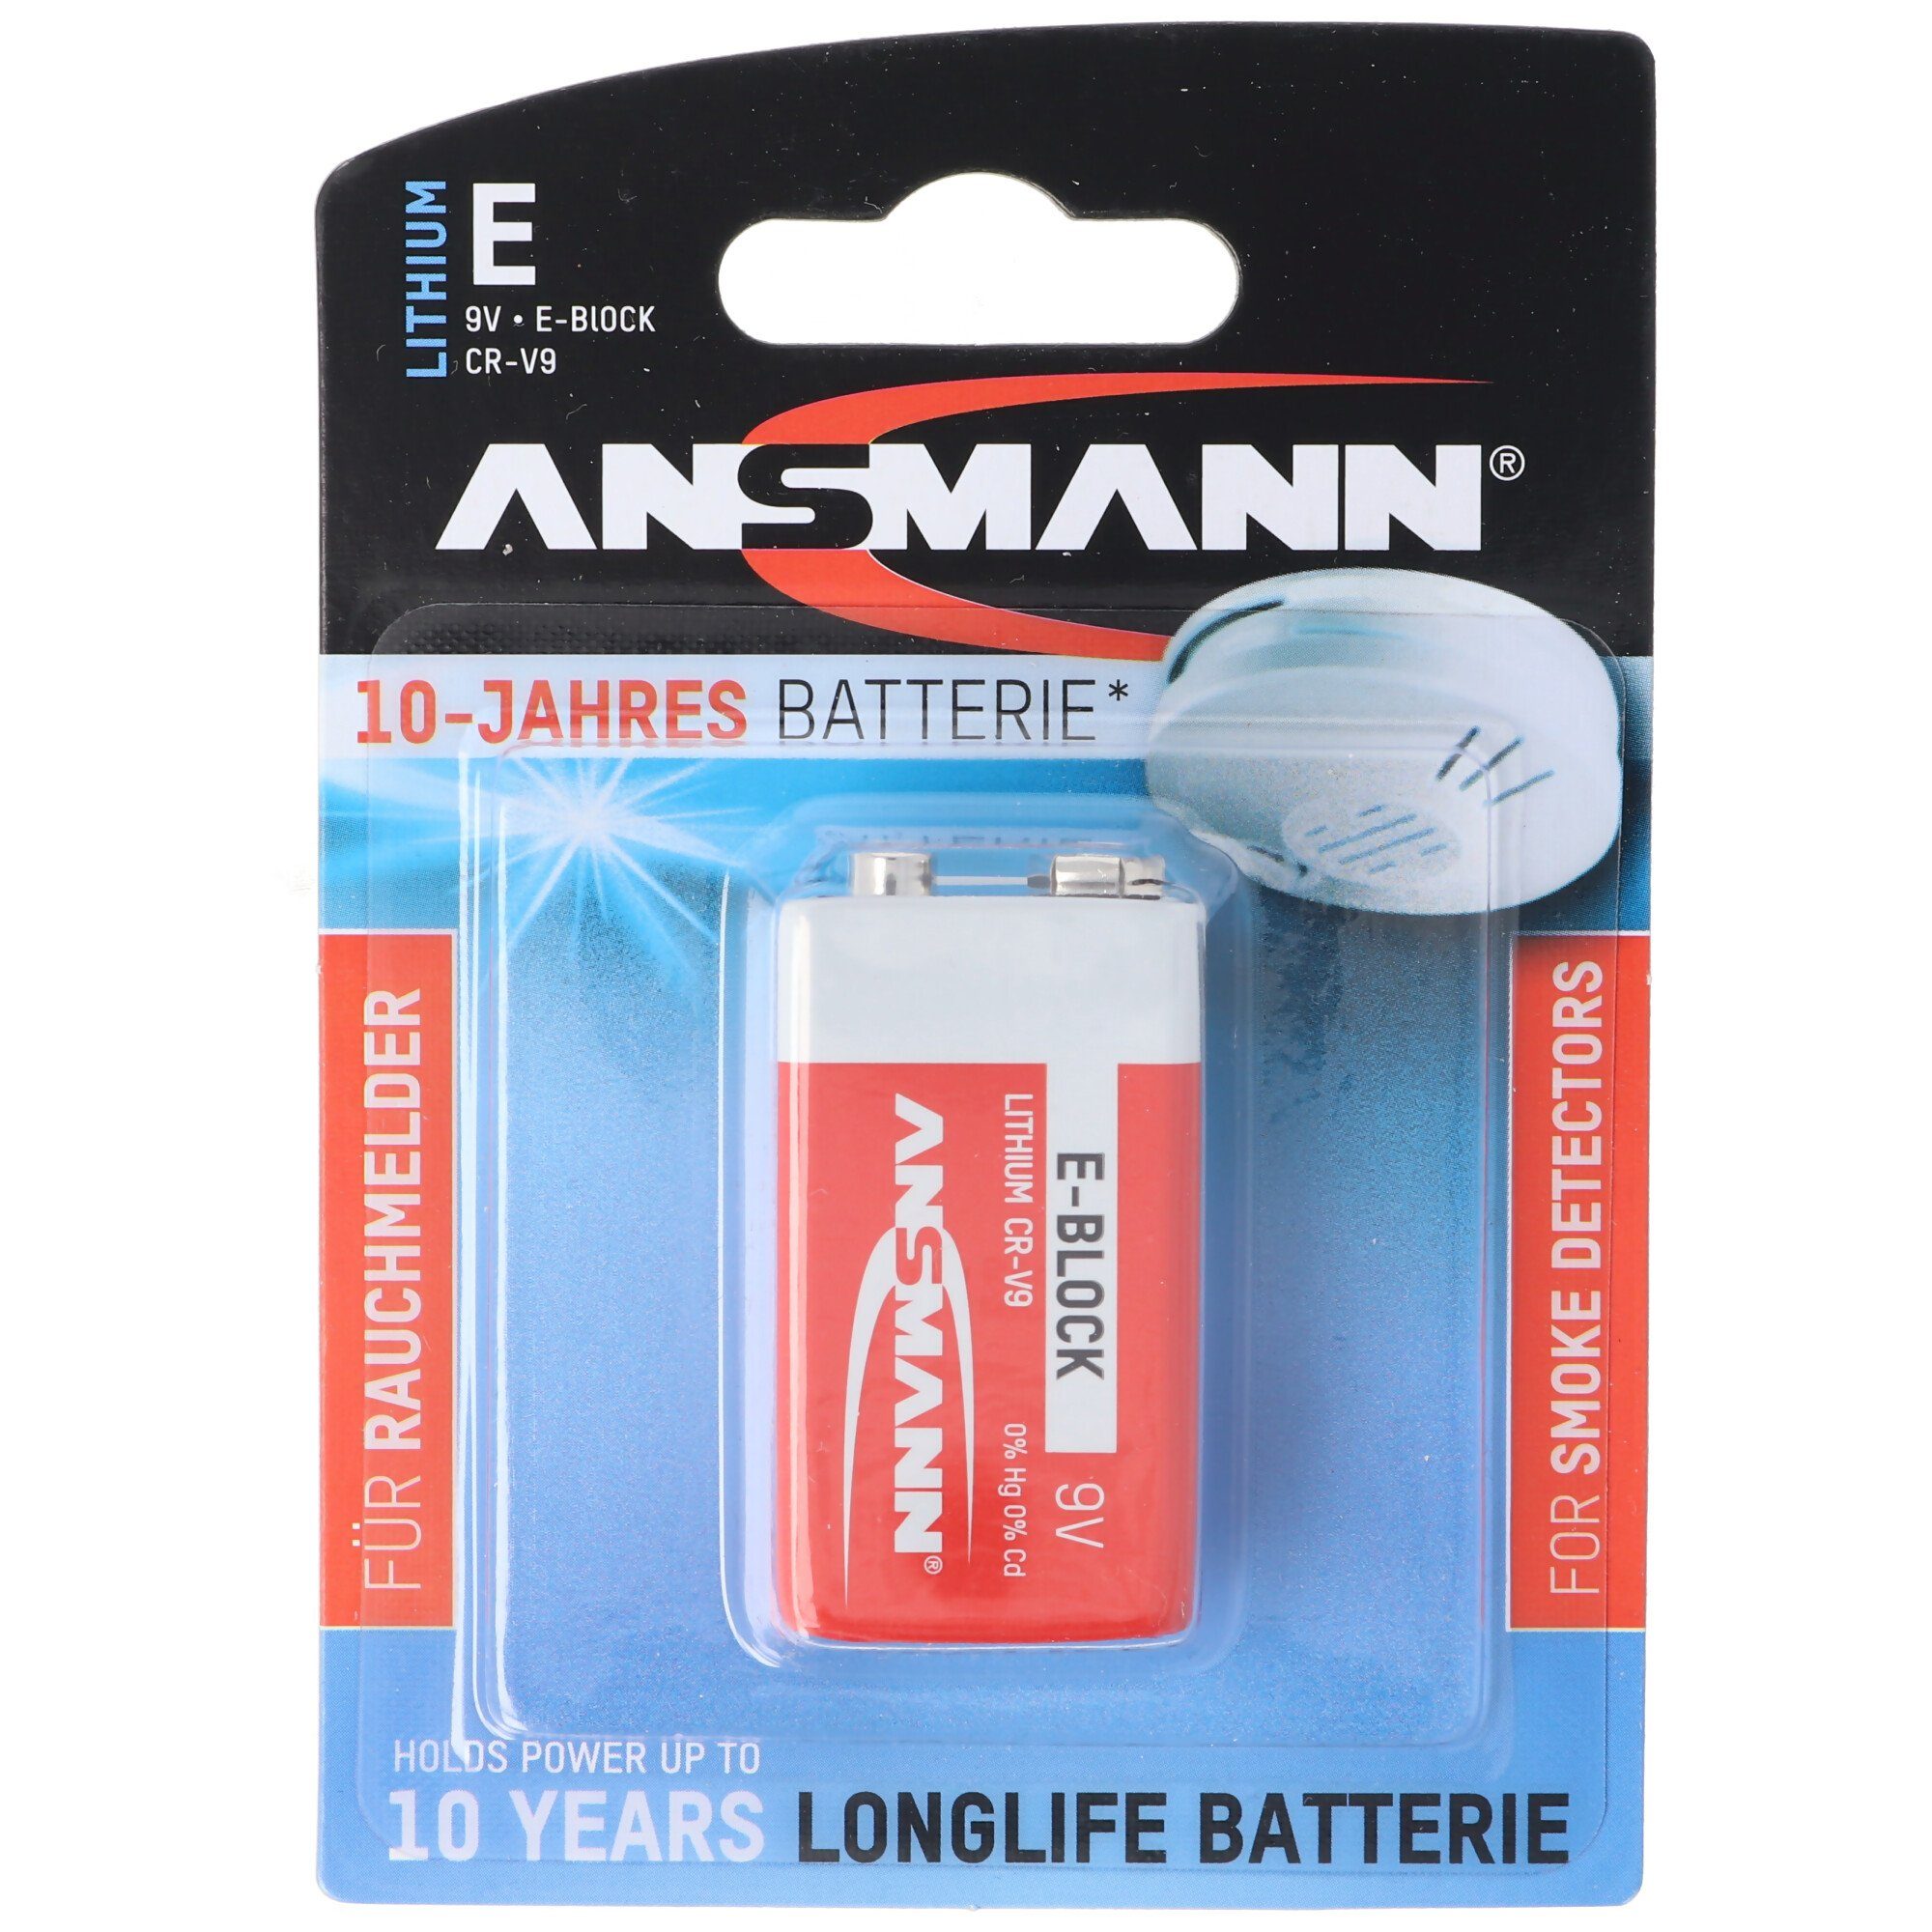 ANSMANN® Lithium Batterie für Rauchmelder 9V E-Block speziell für Rauchwarnmel Batterie, (9,0 V)